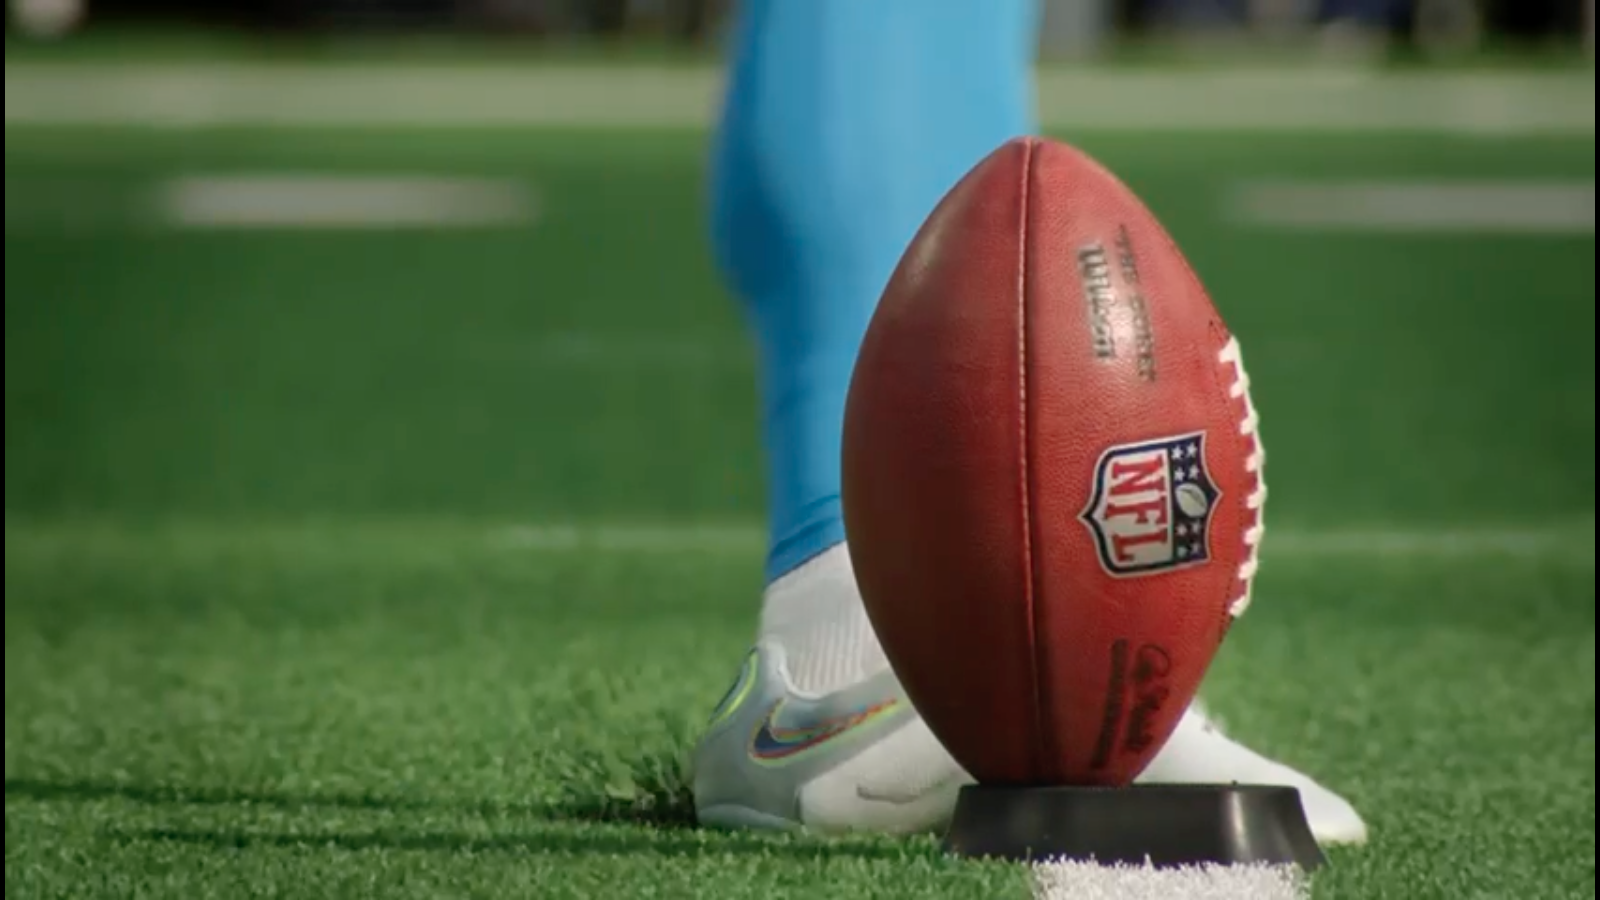 RedeTV! transmite nova temporada da NFL, que começa hoje NFL